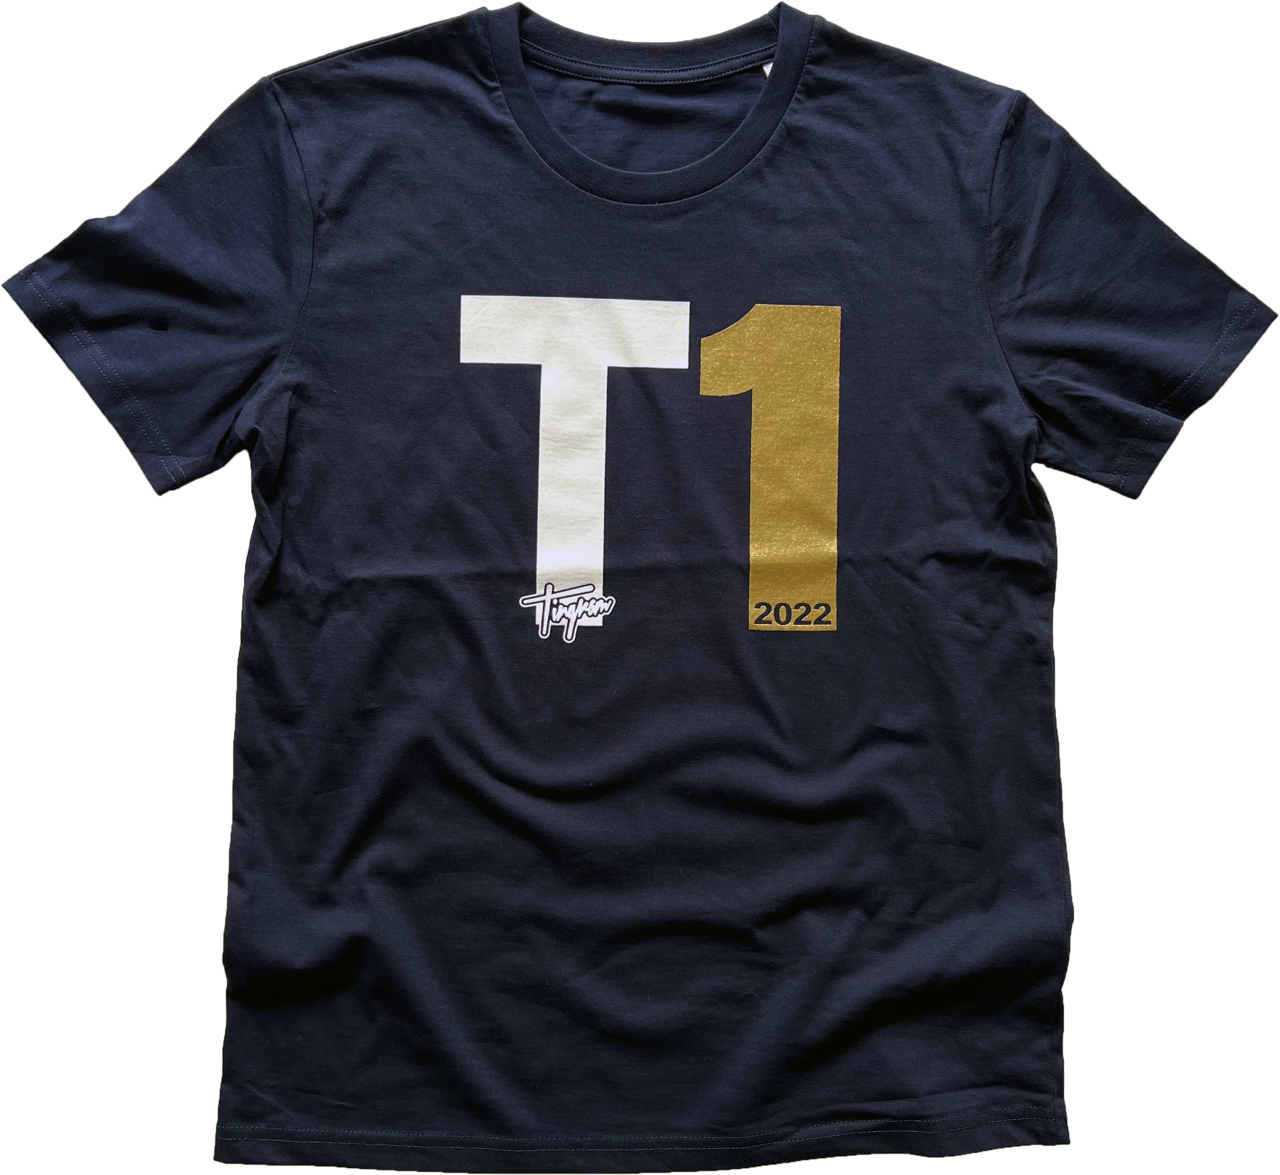 T1 T-shirt